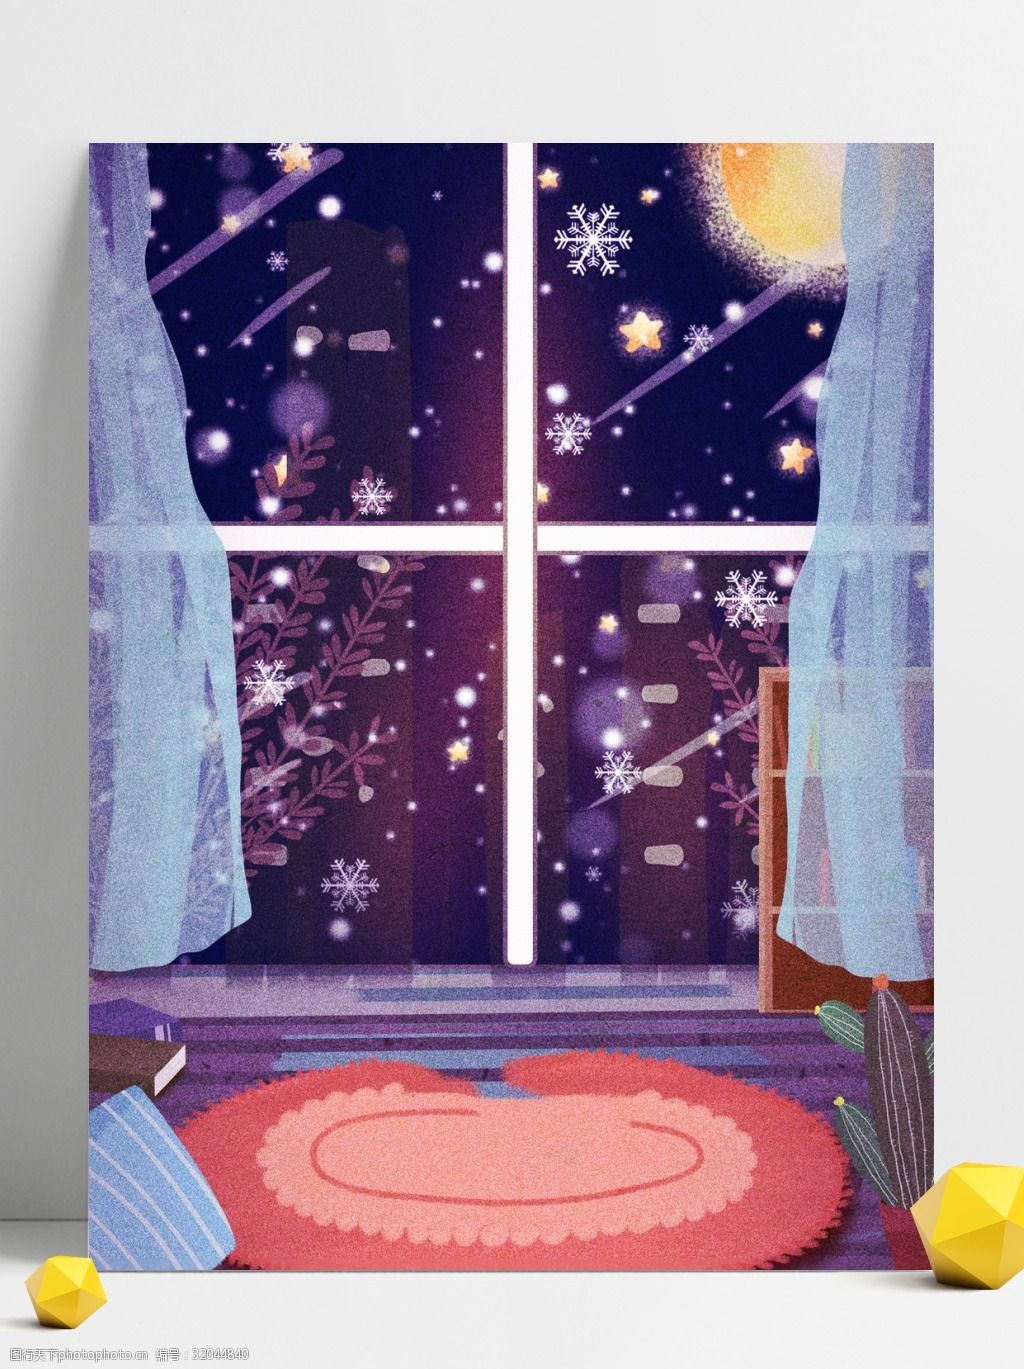 关键词:彩绘冬季窗外雪花背景设计 雪花 下雪 窗户 彩绘背景 手绘背景